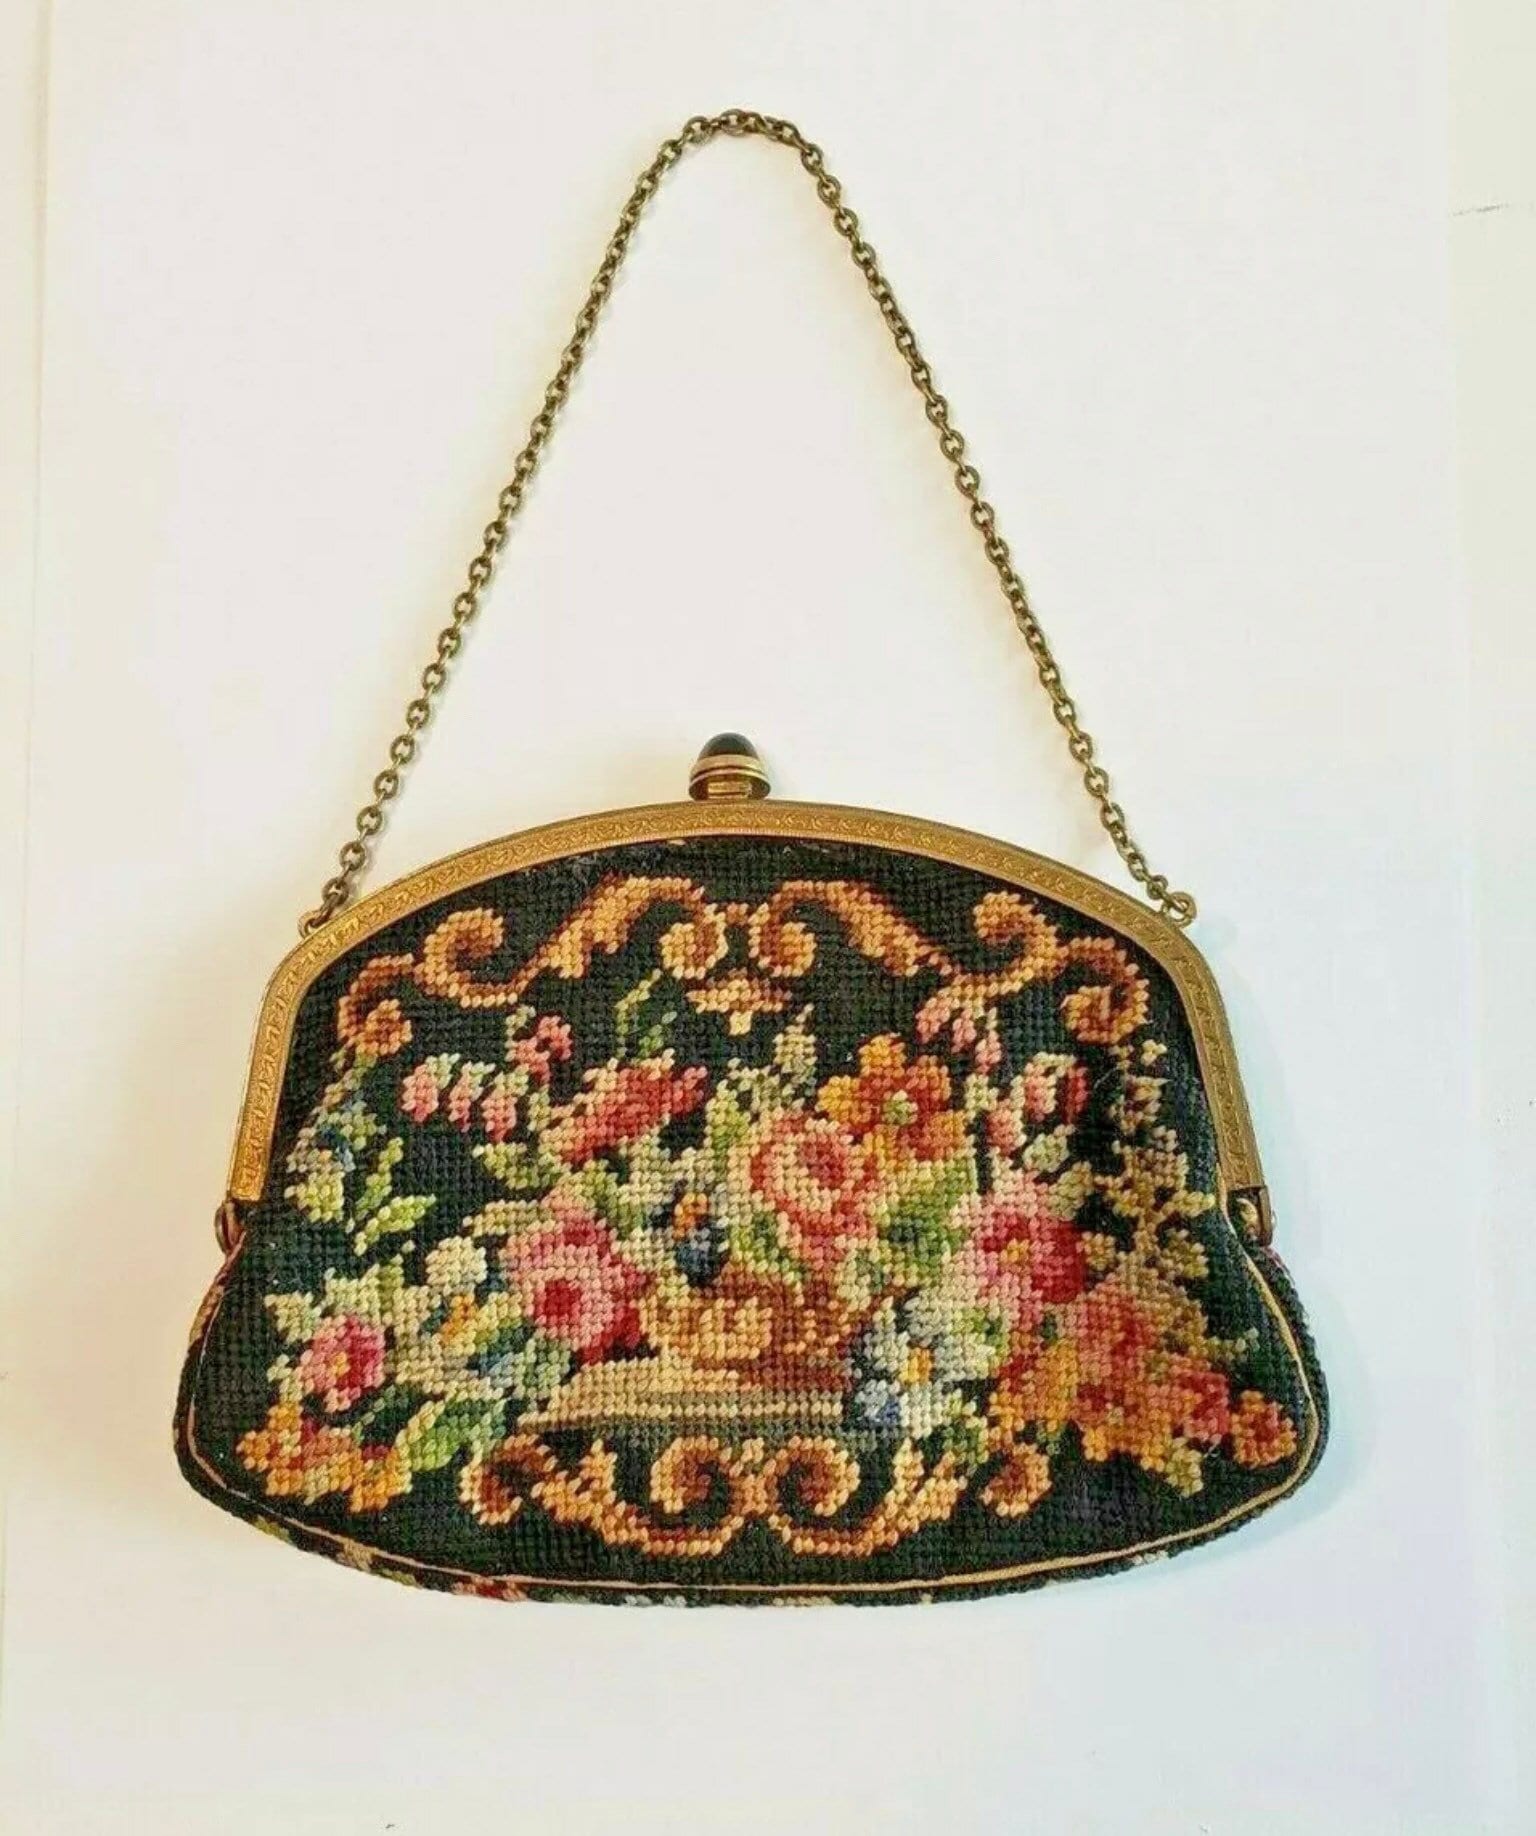 Divine vintage petit point evening bag or purse